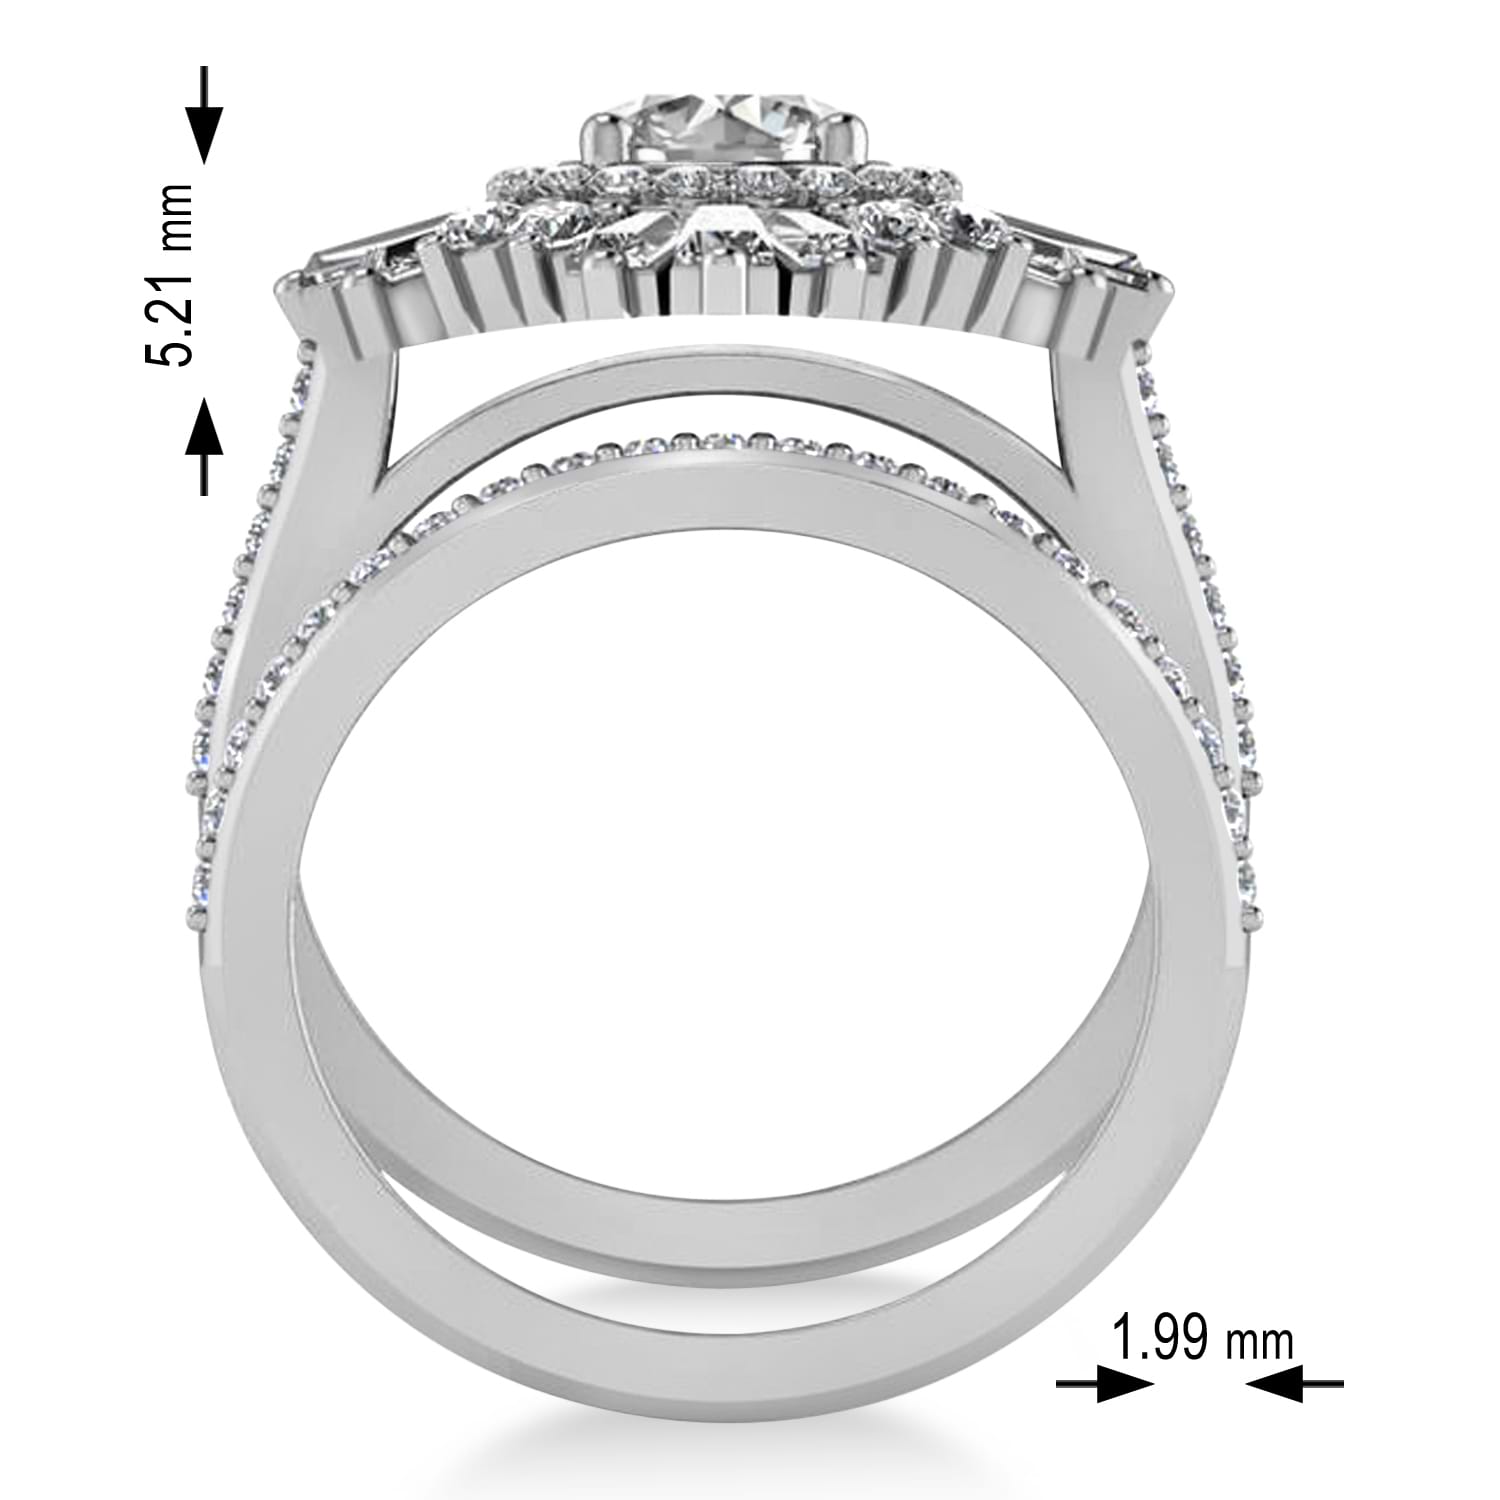 Diamond Ballerina Engagement Ring 18k White Gold (2.74 ctw)